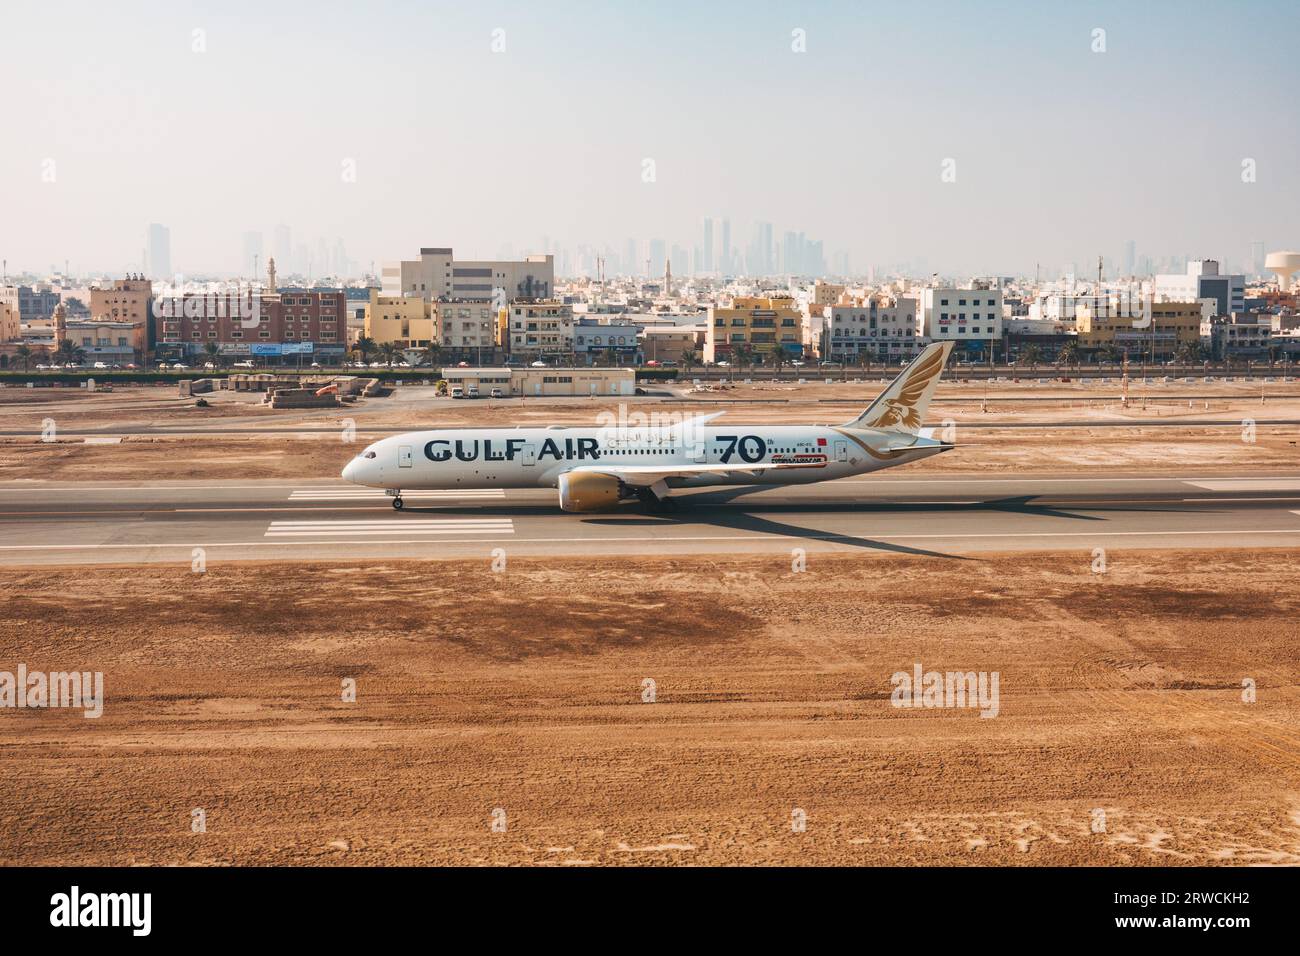 Un Boeing 787 de Gulf Air sur la piste de l'aéroport international de Bahreïn, Bahreïn, avec Muharraq et la ville de Manama photographiés derrière Banque D'Images